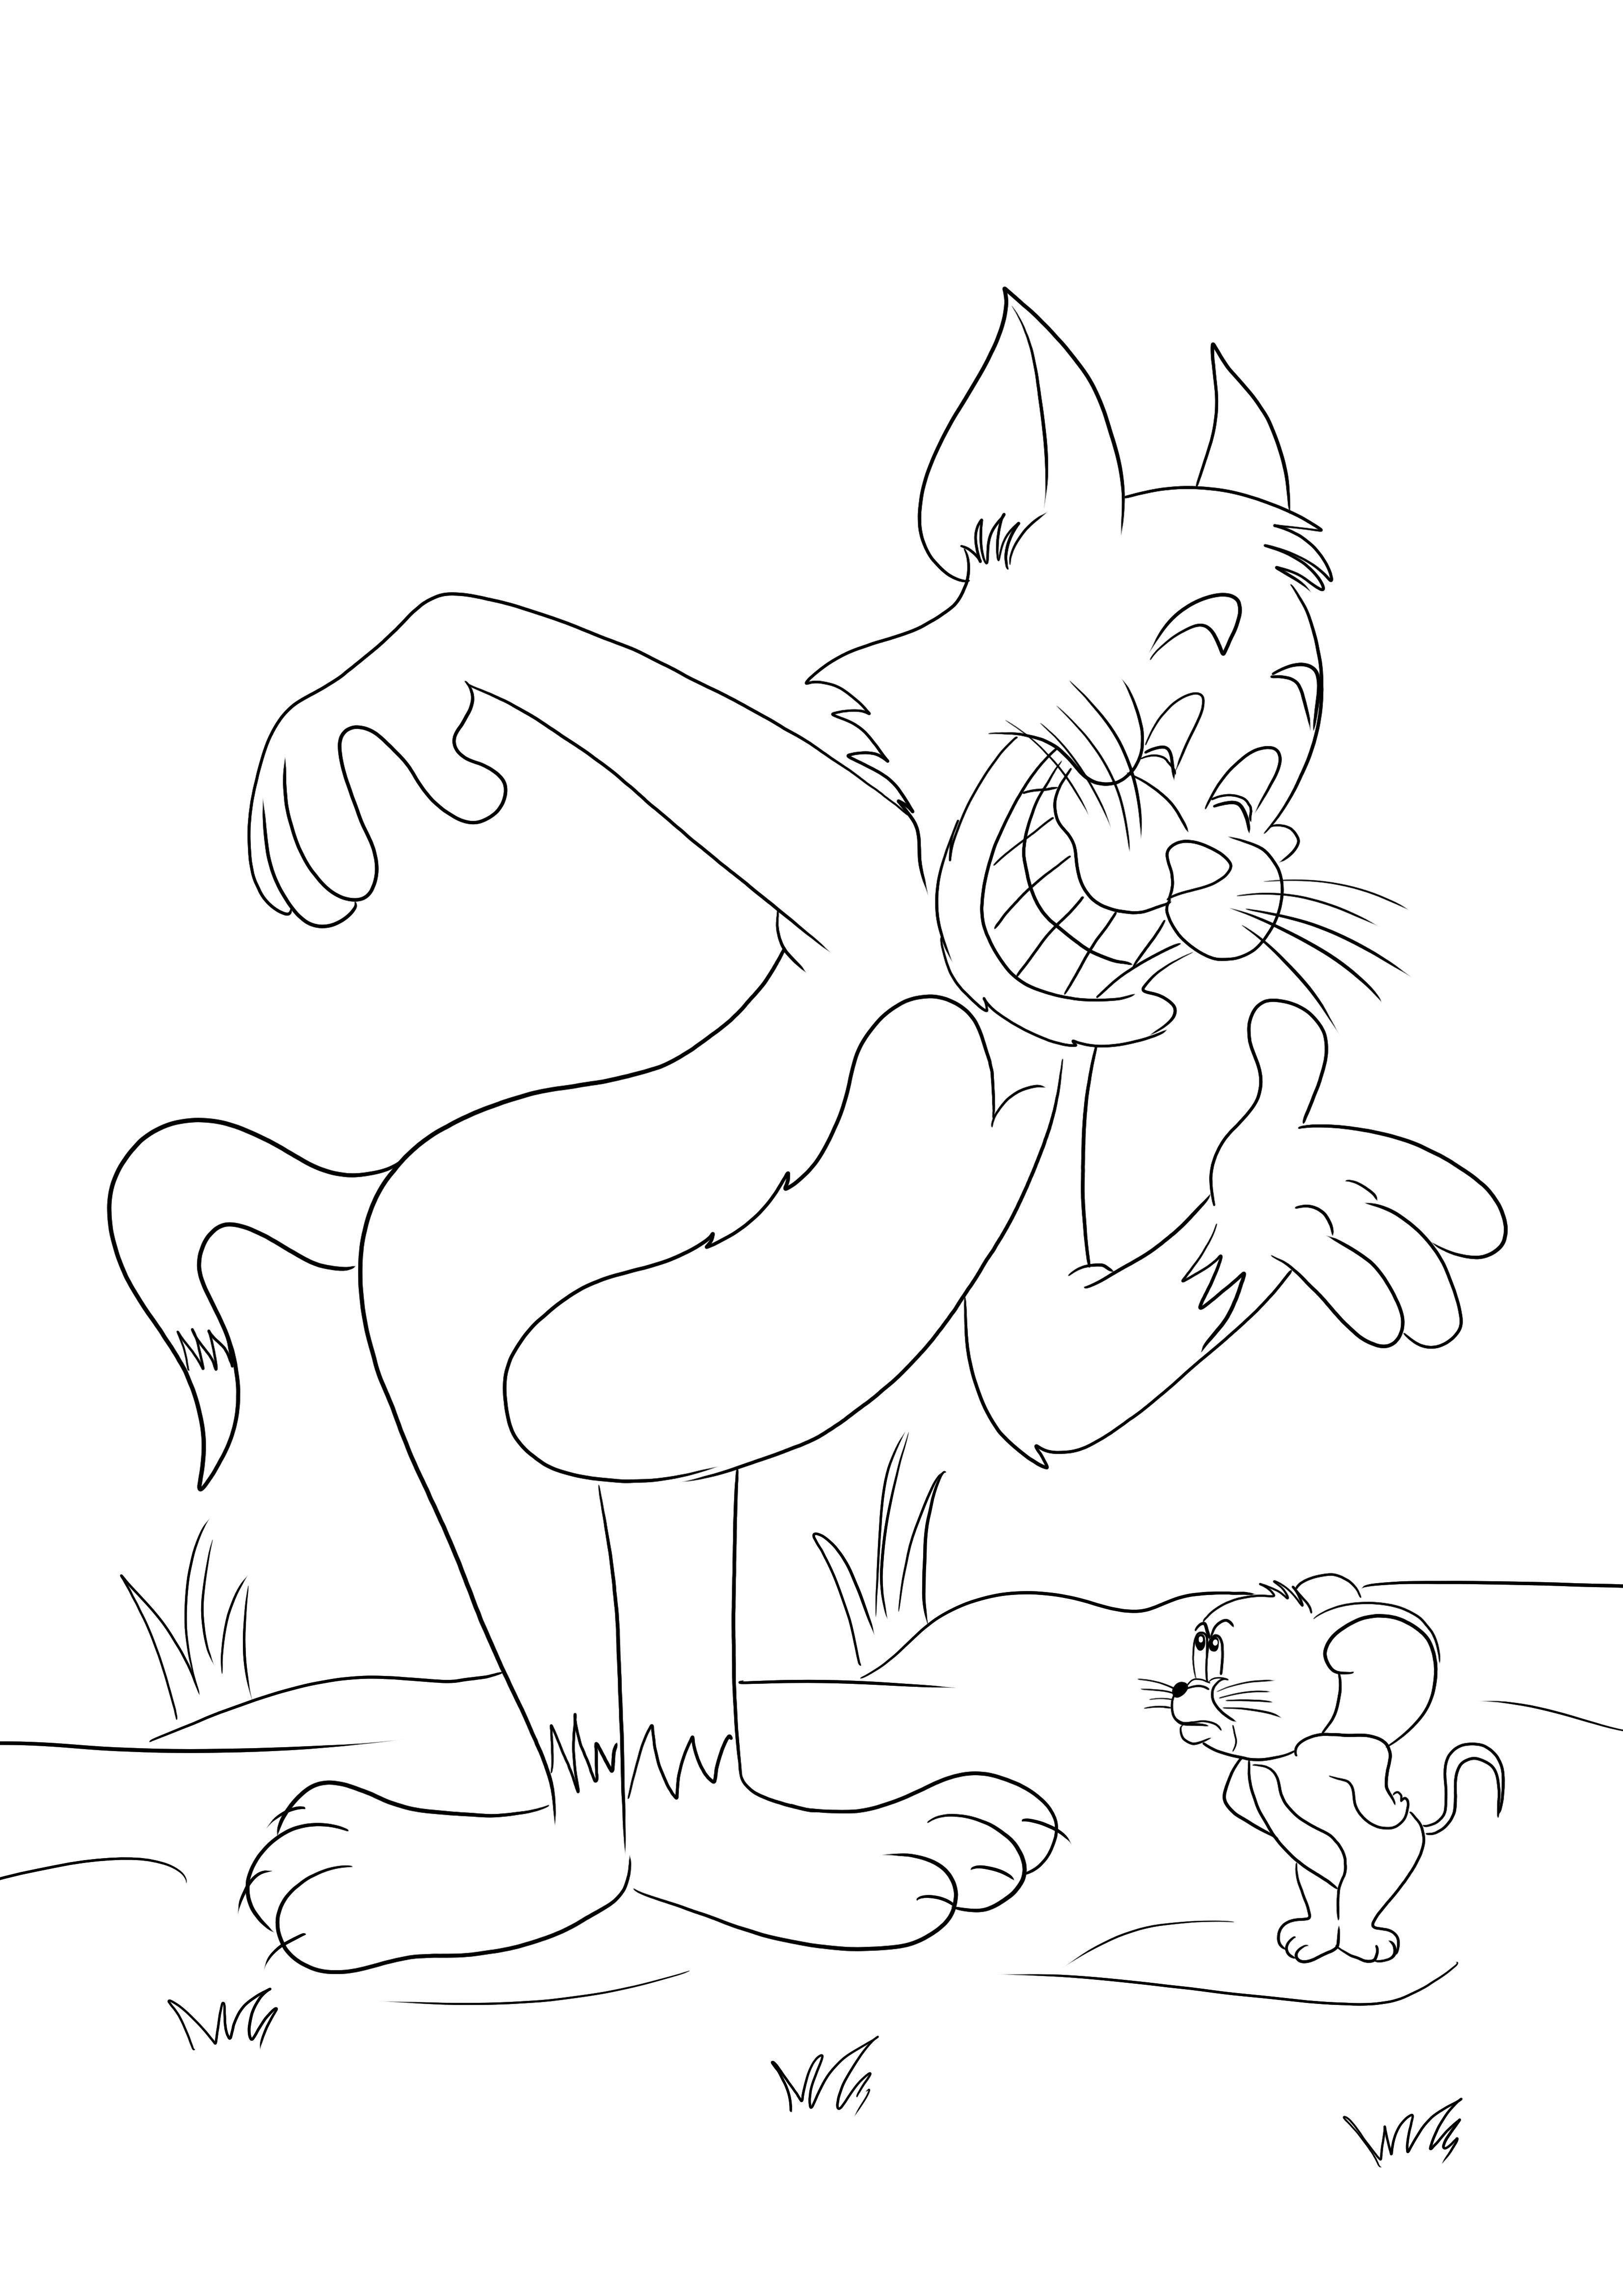 Gratis afdruk van Tom en Jerry die weer vechten om gemakkelijk voor kinderen te kleuren kleurplaat